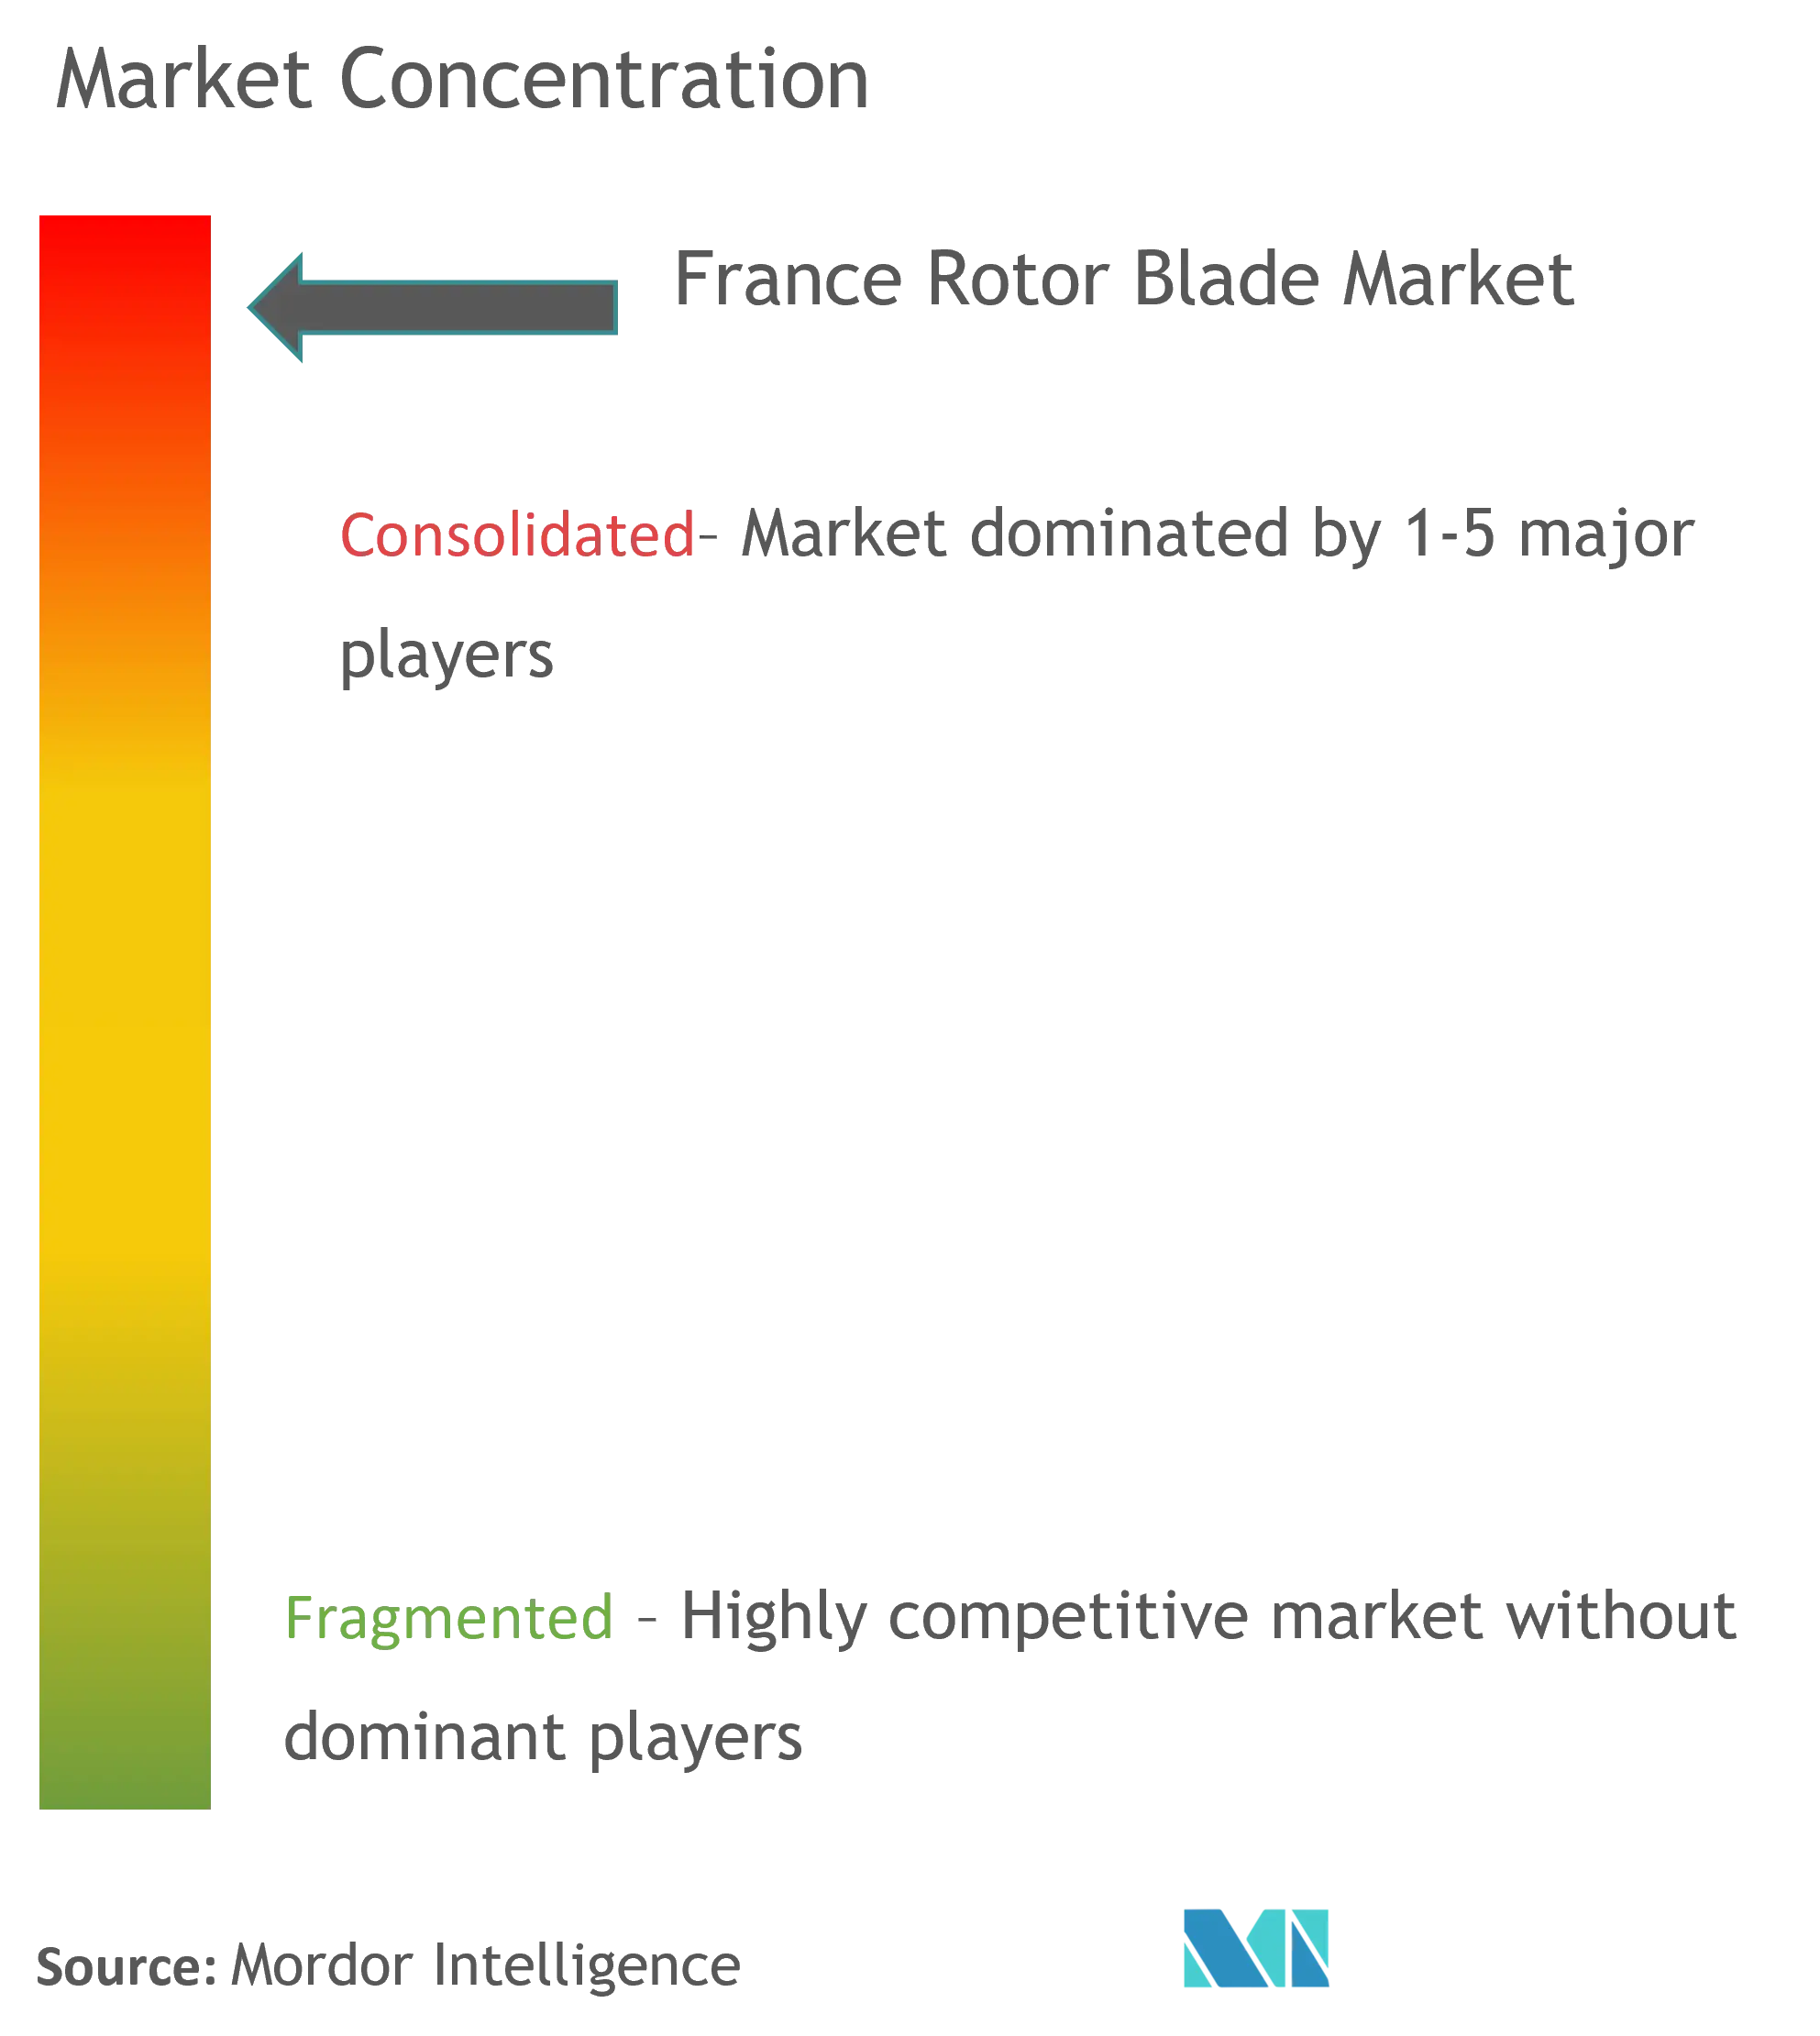 France Rotor Blade Market Concentration